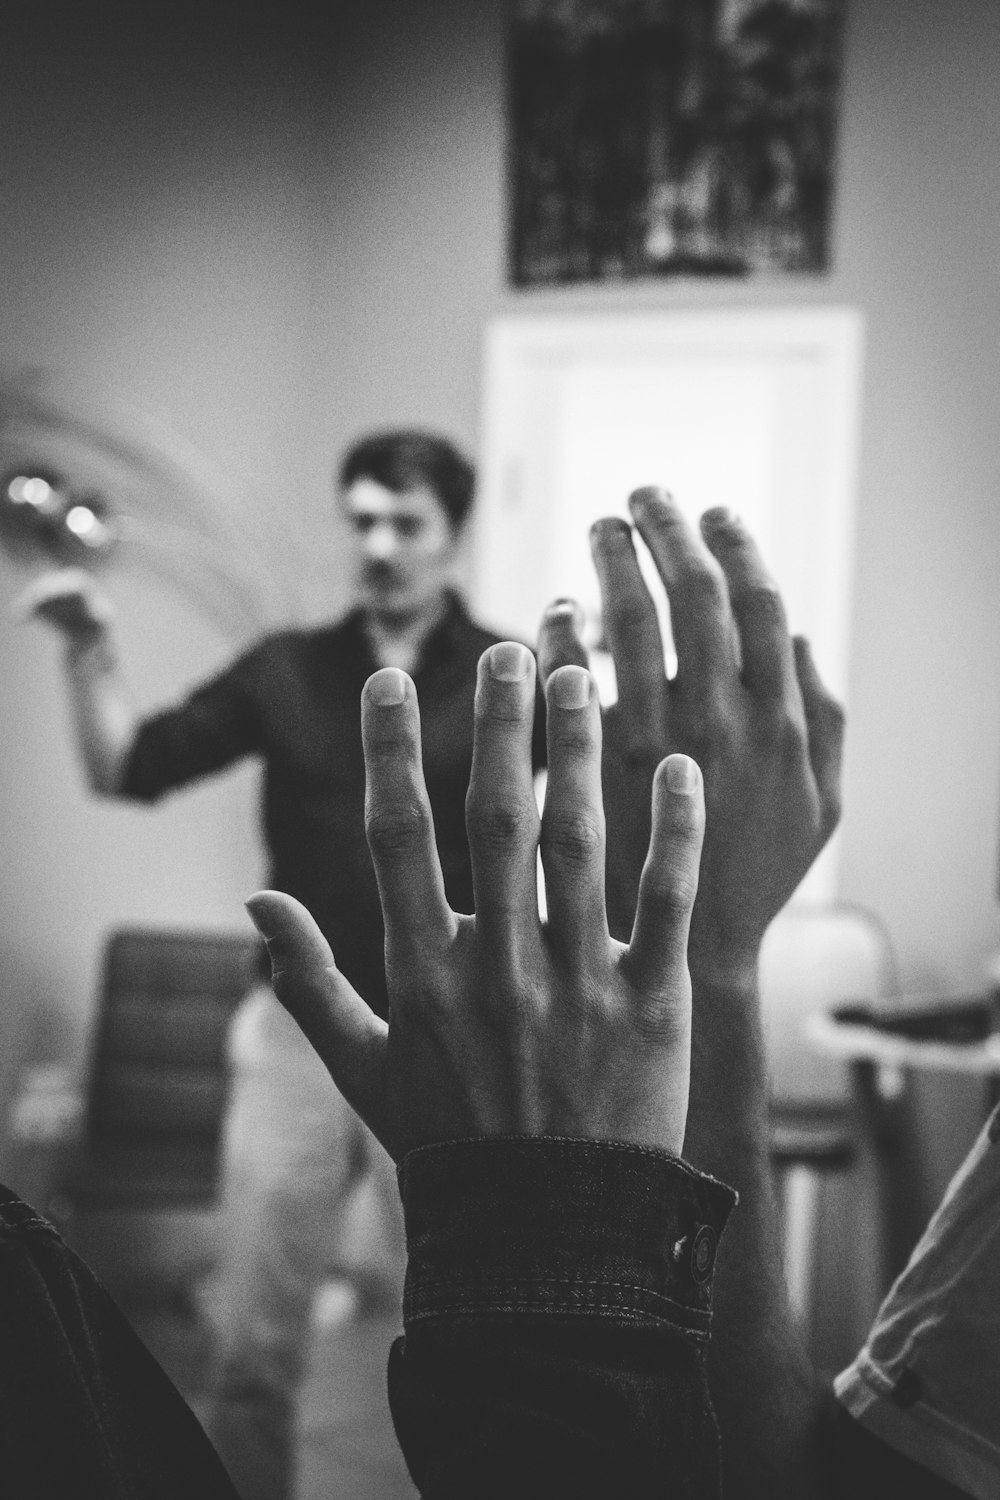 fotografia in scala di grigi di due persone che alzano le mani